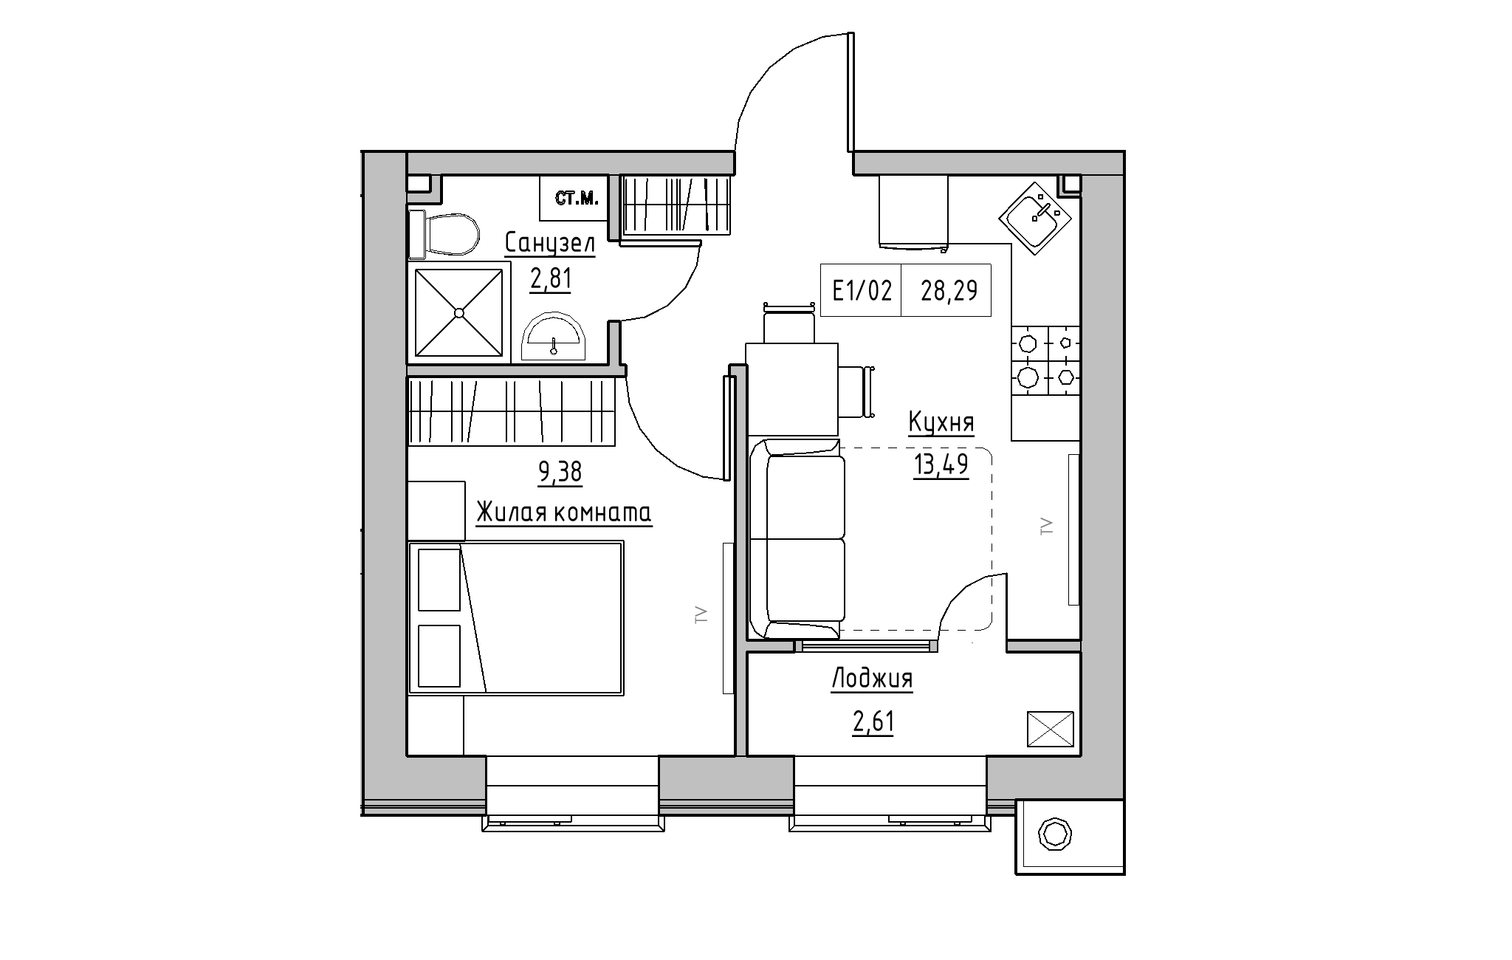 Планировка 1-к квартира площей 28.29м2, KS-013-04/0013.